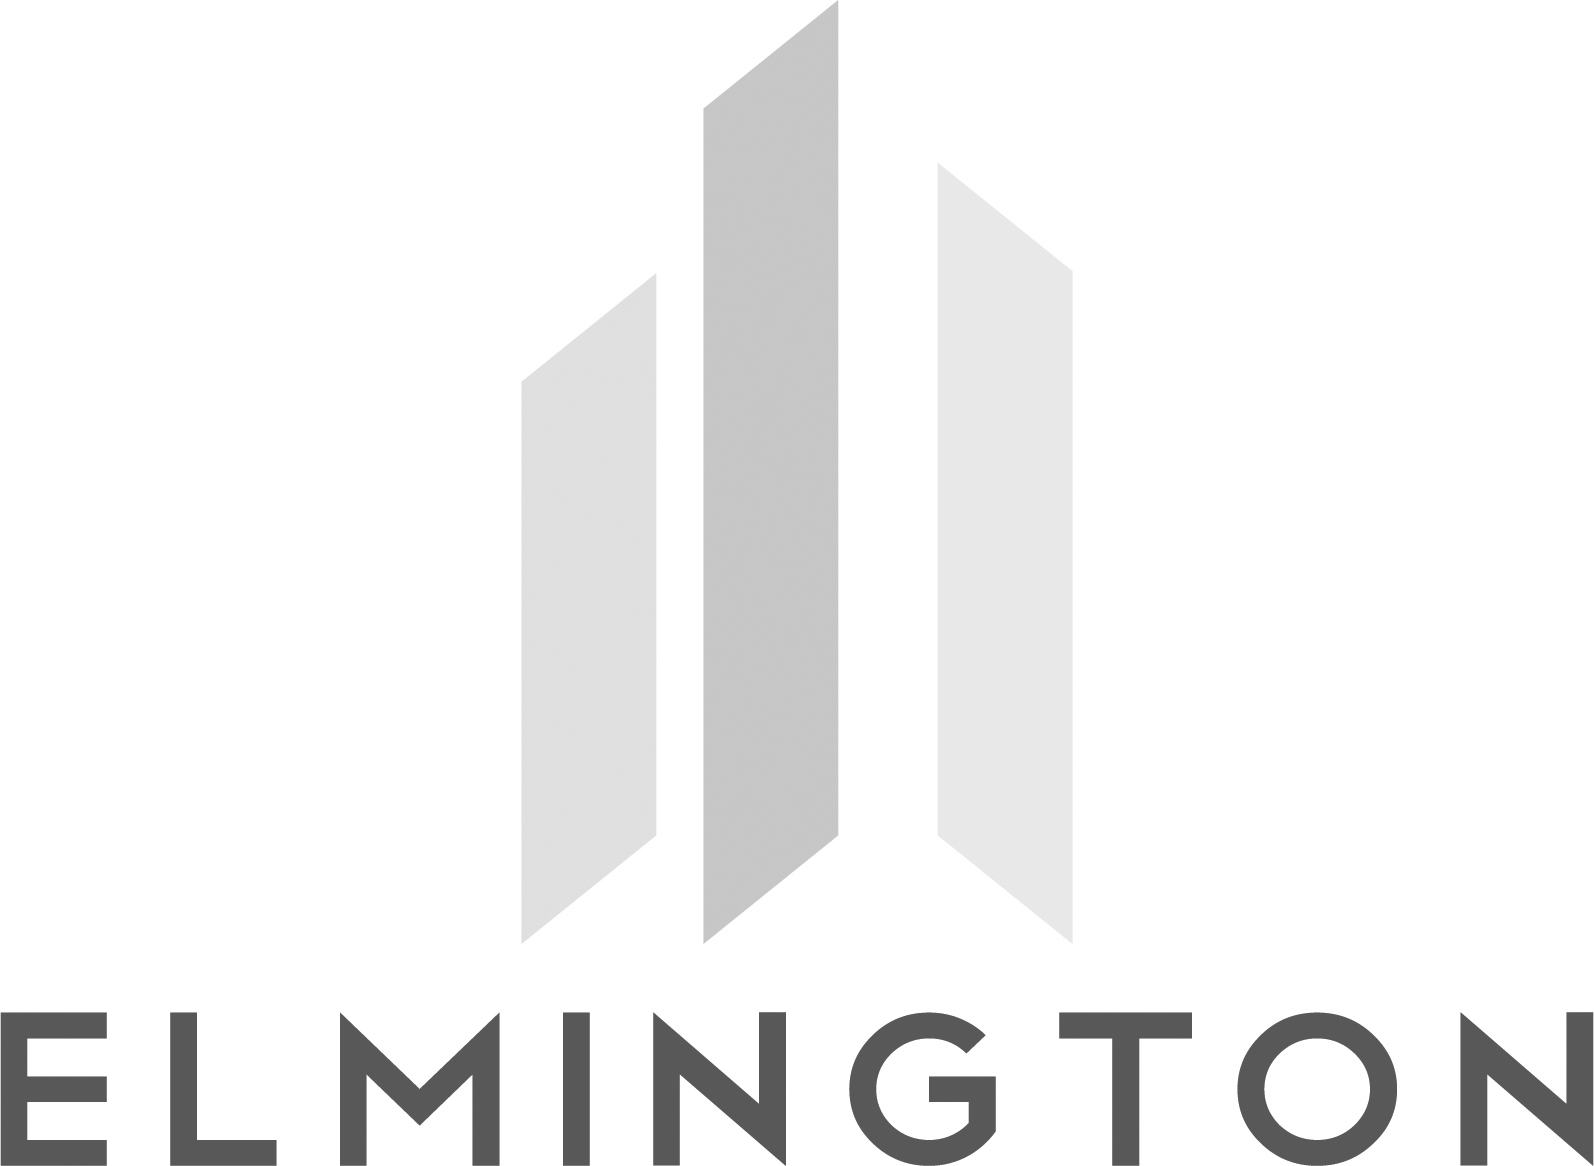 Elmington logo